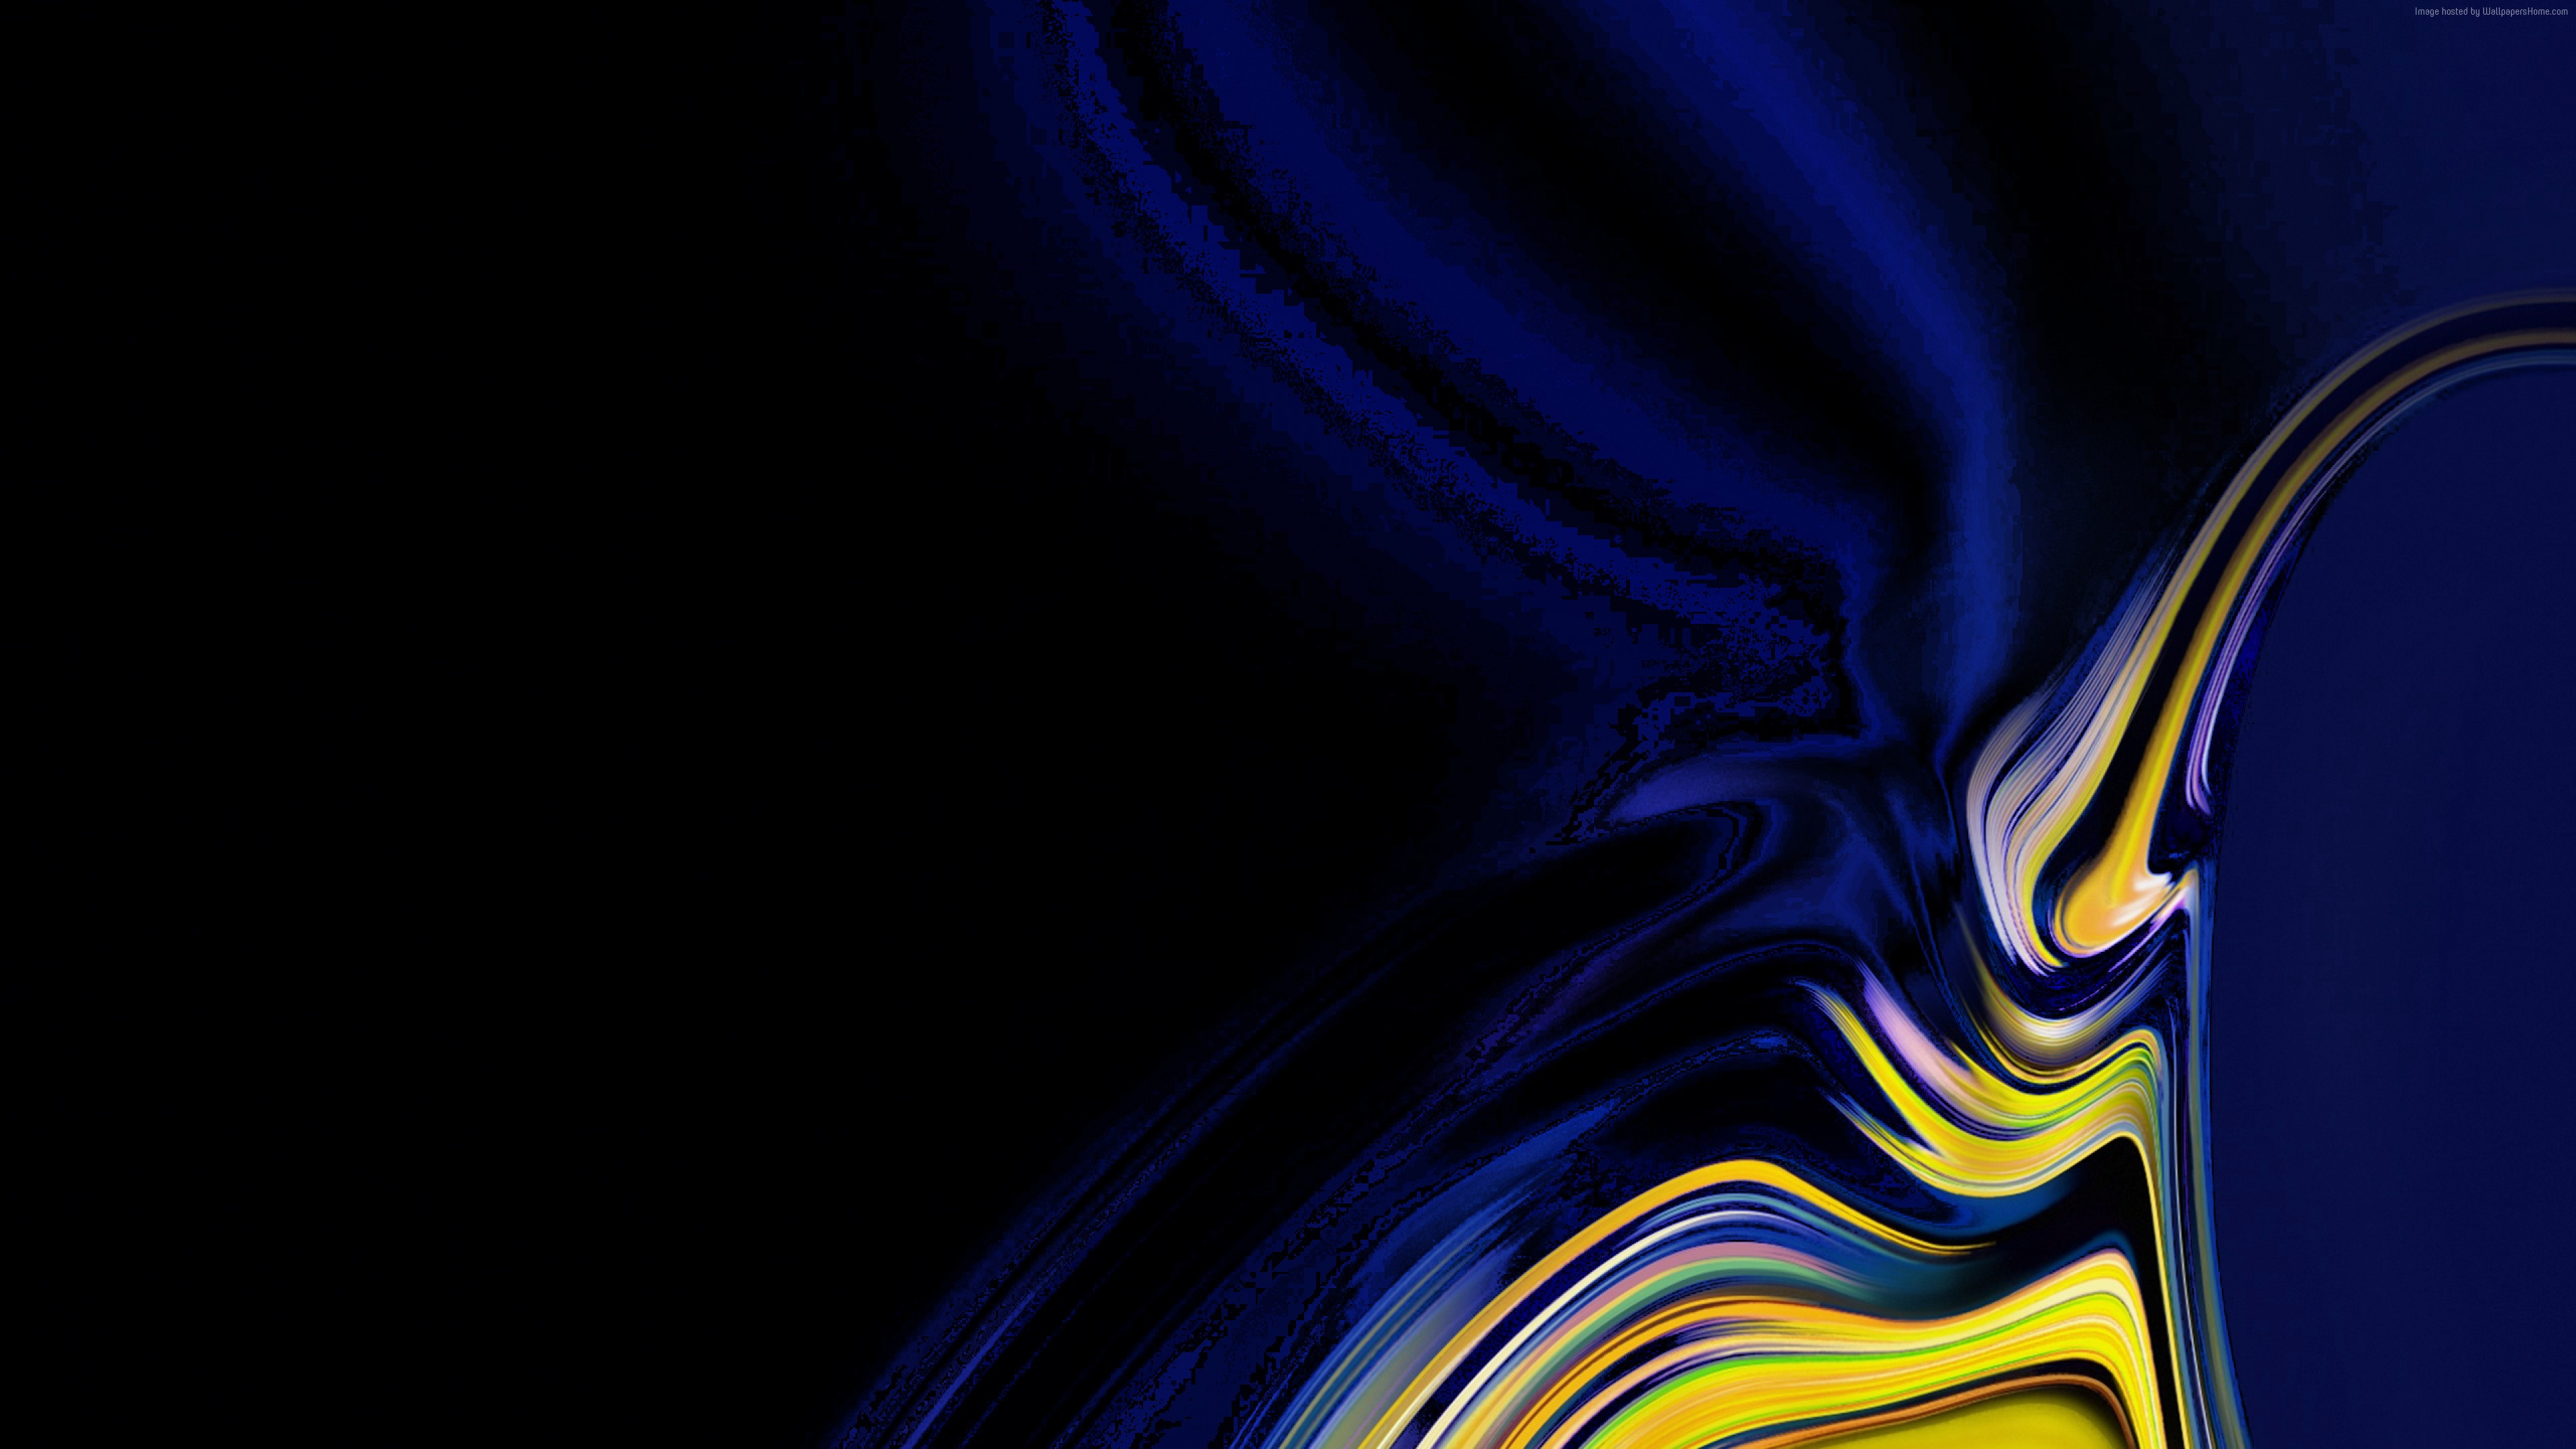 samsung galaxy wallpaper,azul,azul cobalto,agua,azul eléctrico,amarillo